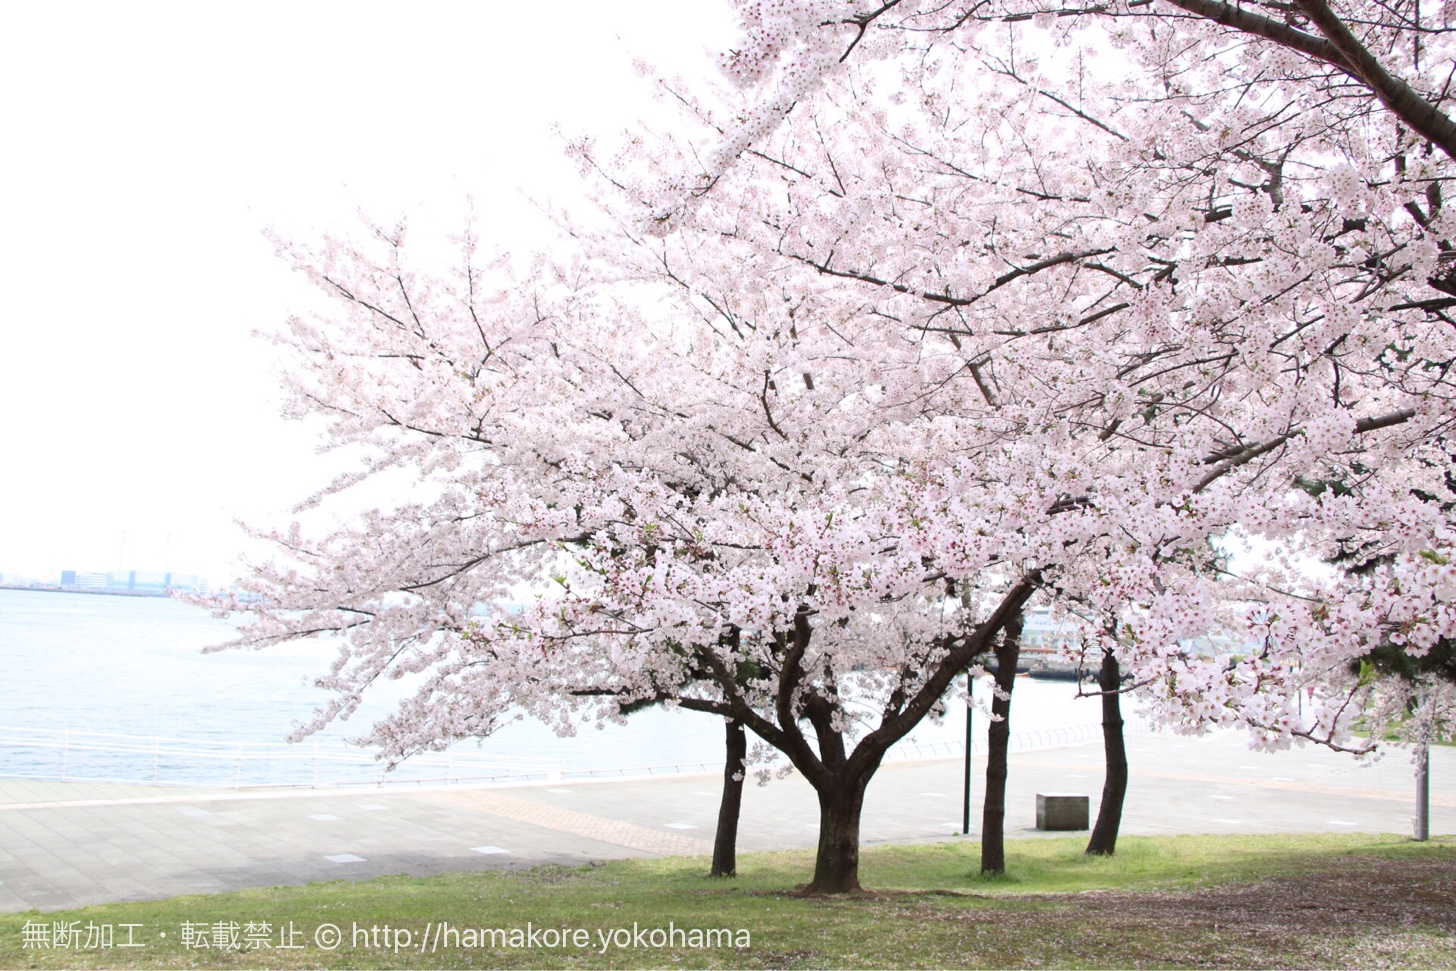 カップヌードルパークの桜